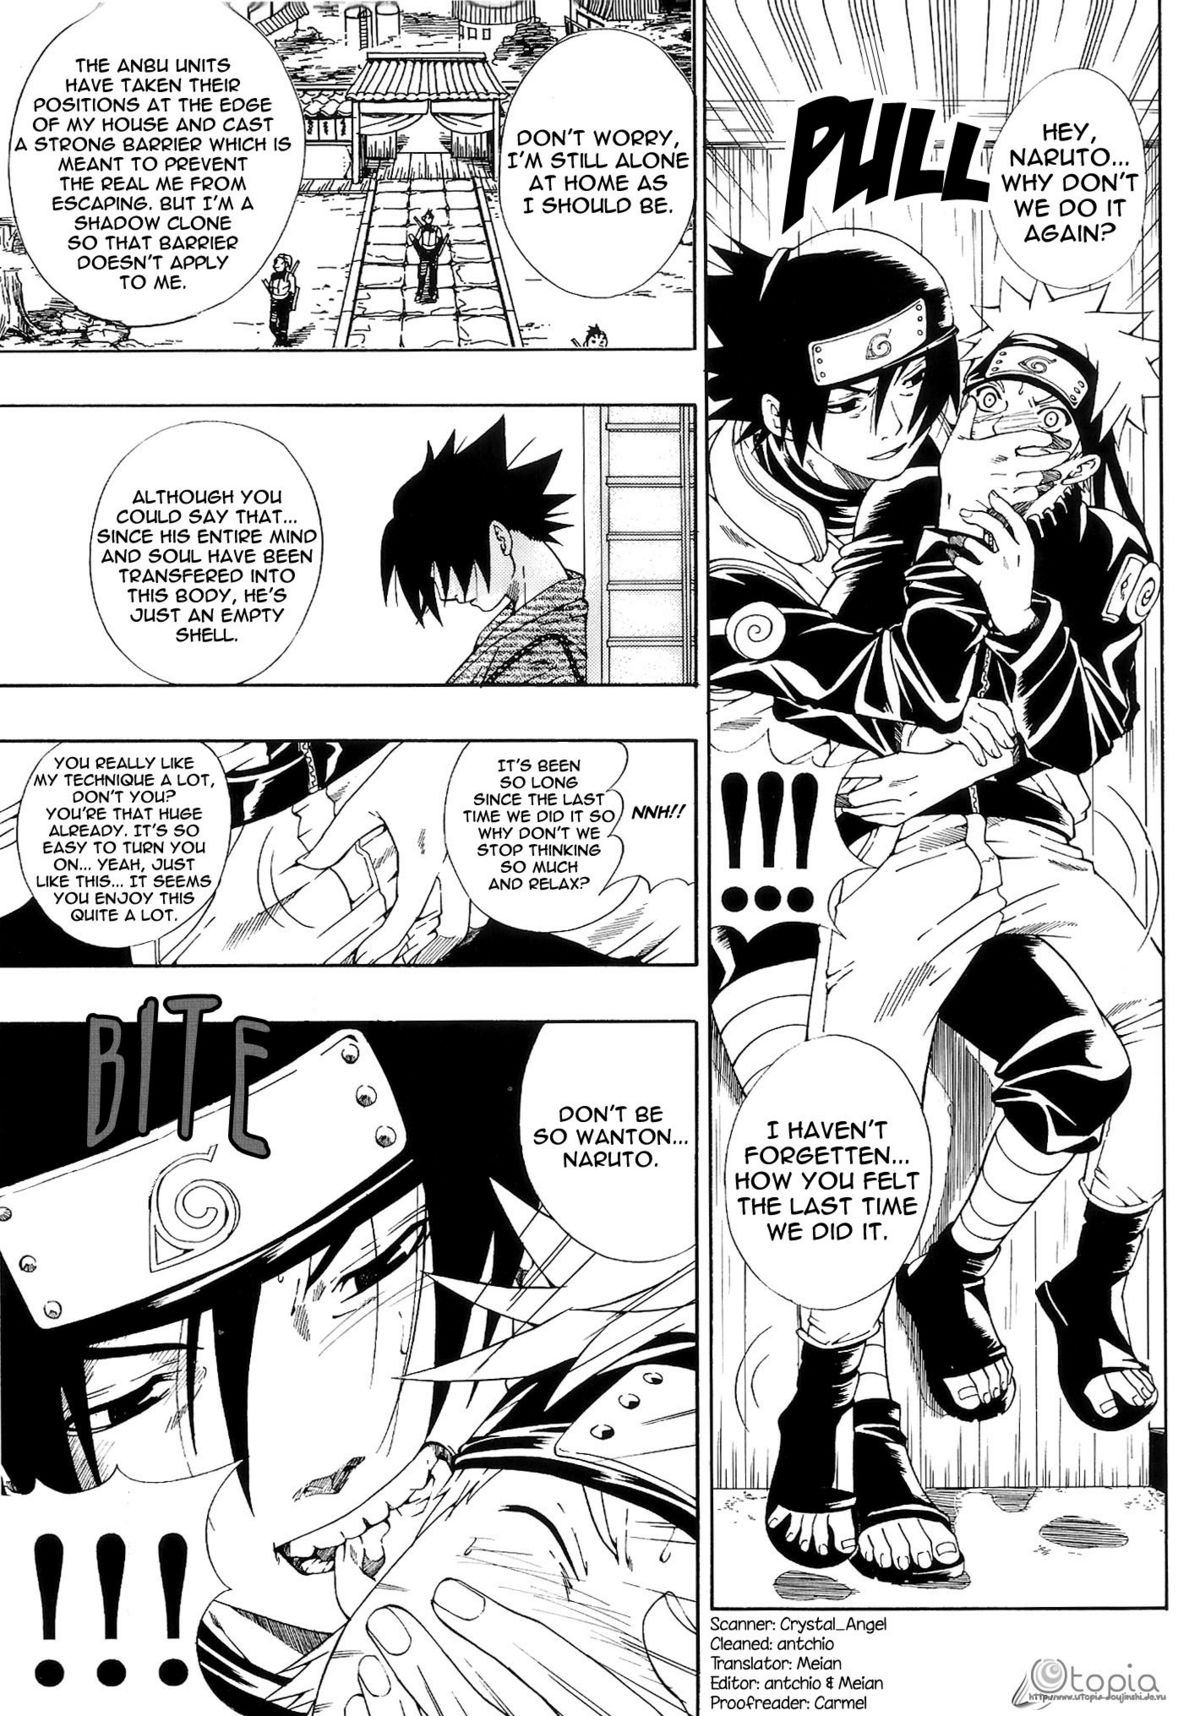 ERO ERO²: Volume 1.5  (NARUTO) [Sasuke X Naruto] YAOI -ENG- page 4 full